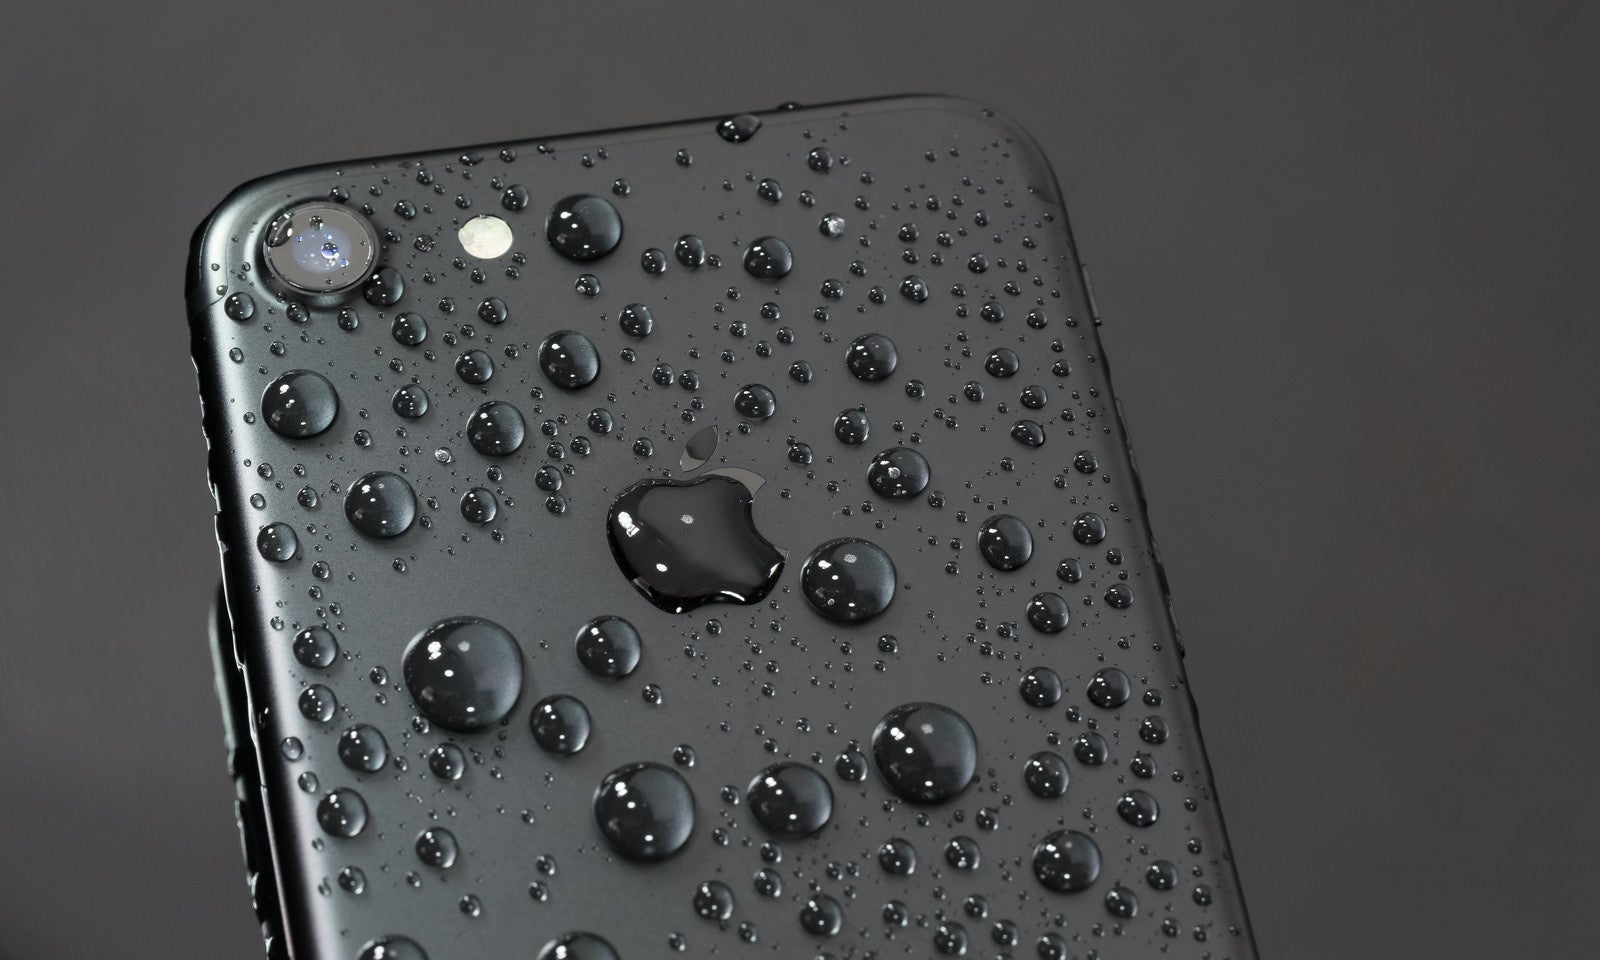 「水に濡れても美しいブラック色のスマートフォン | フリー素材のぱくたそ」の写真